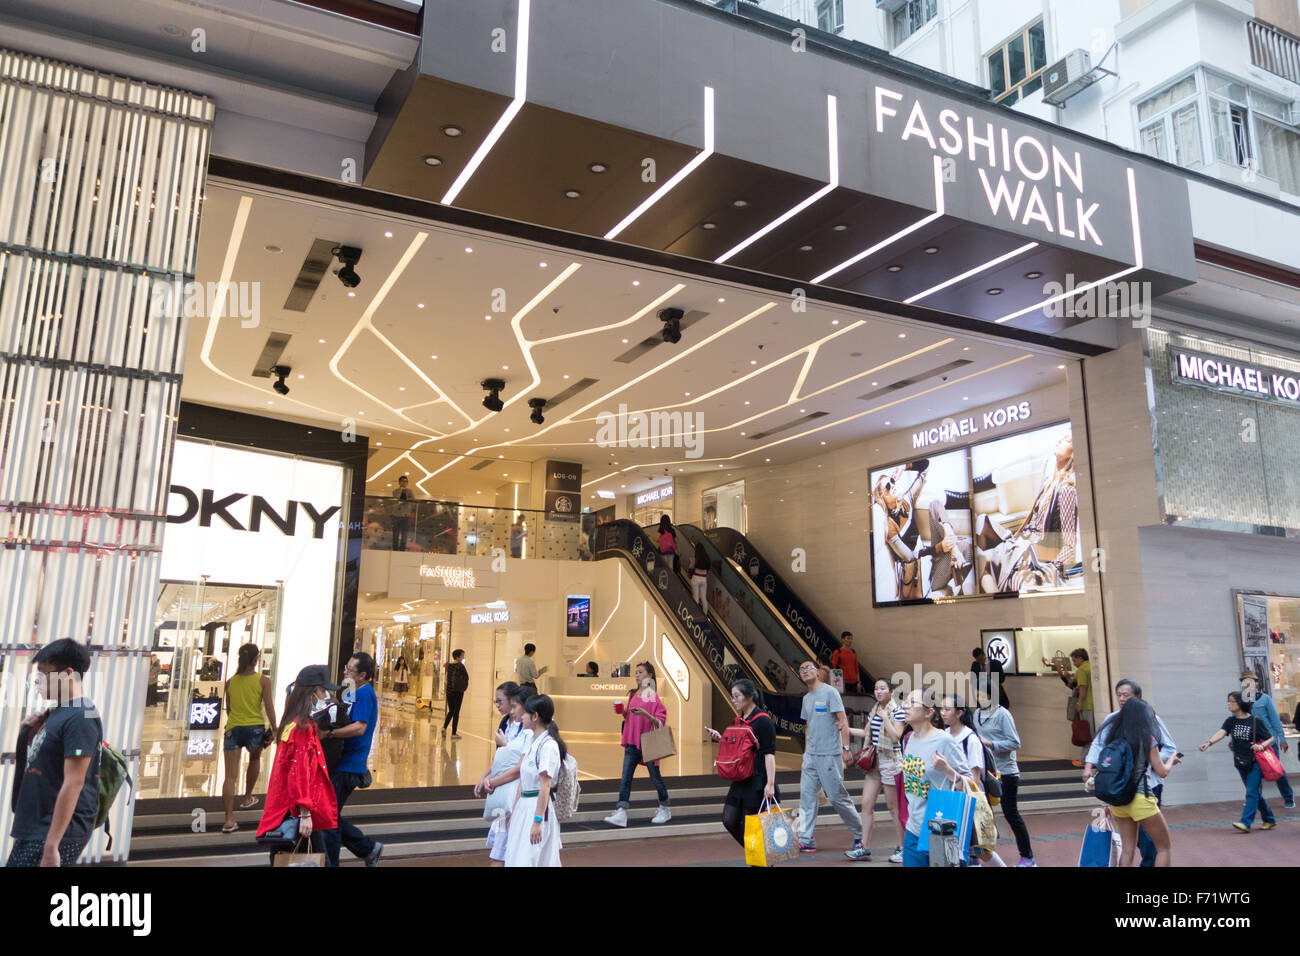 hong kong fashion walk shopping mall causeway bay Stock Photo